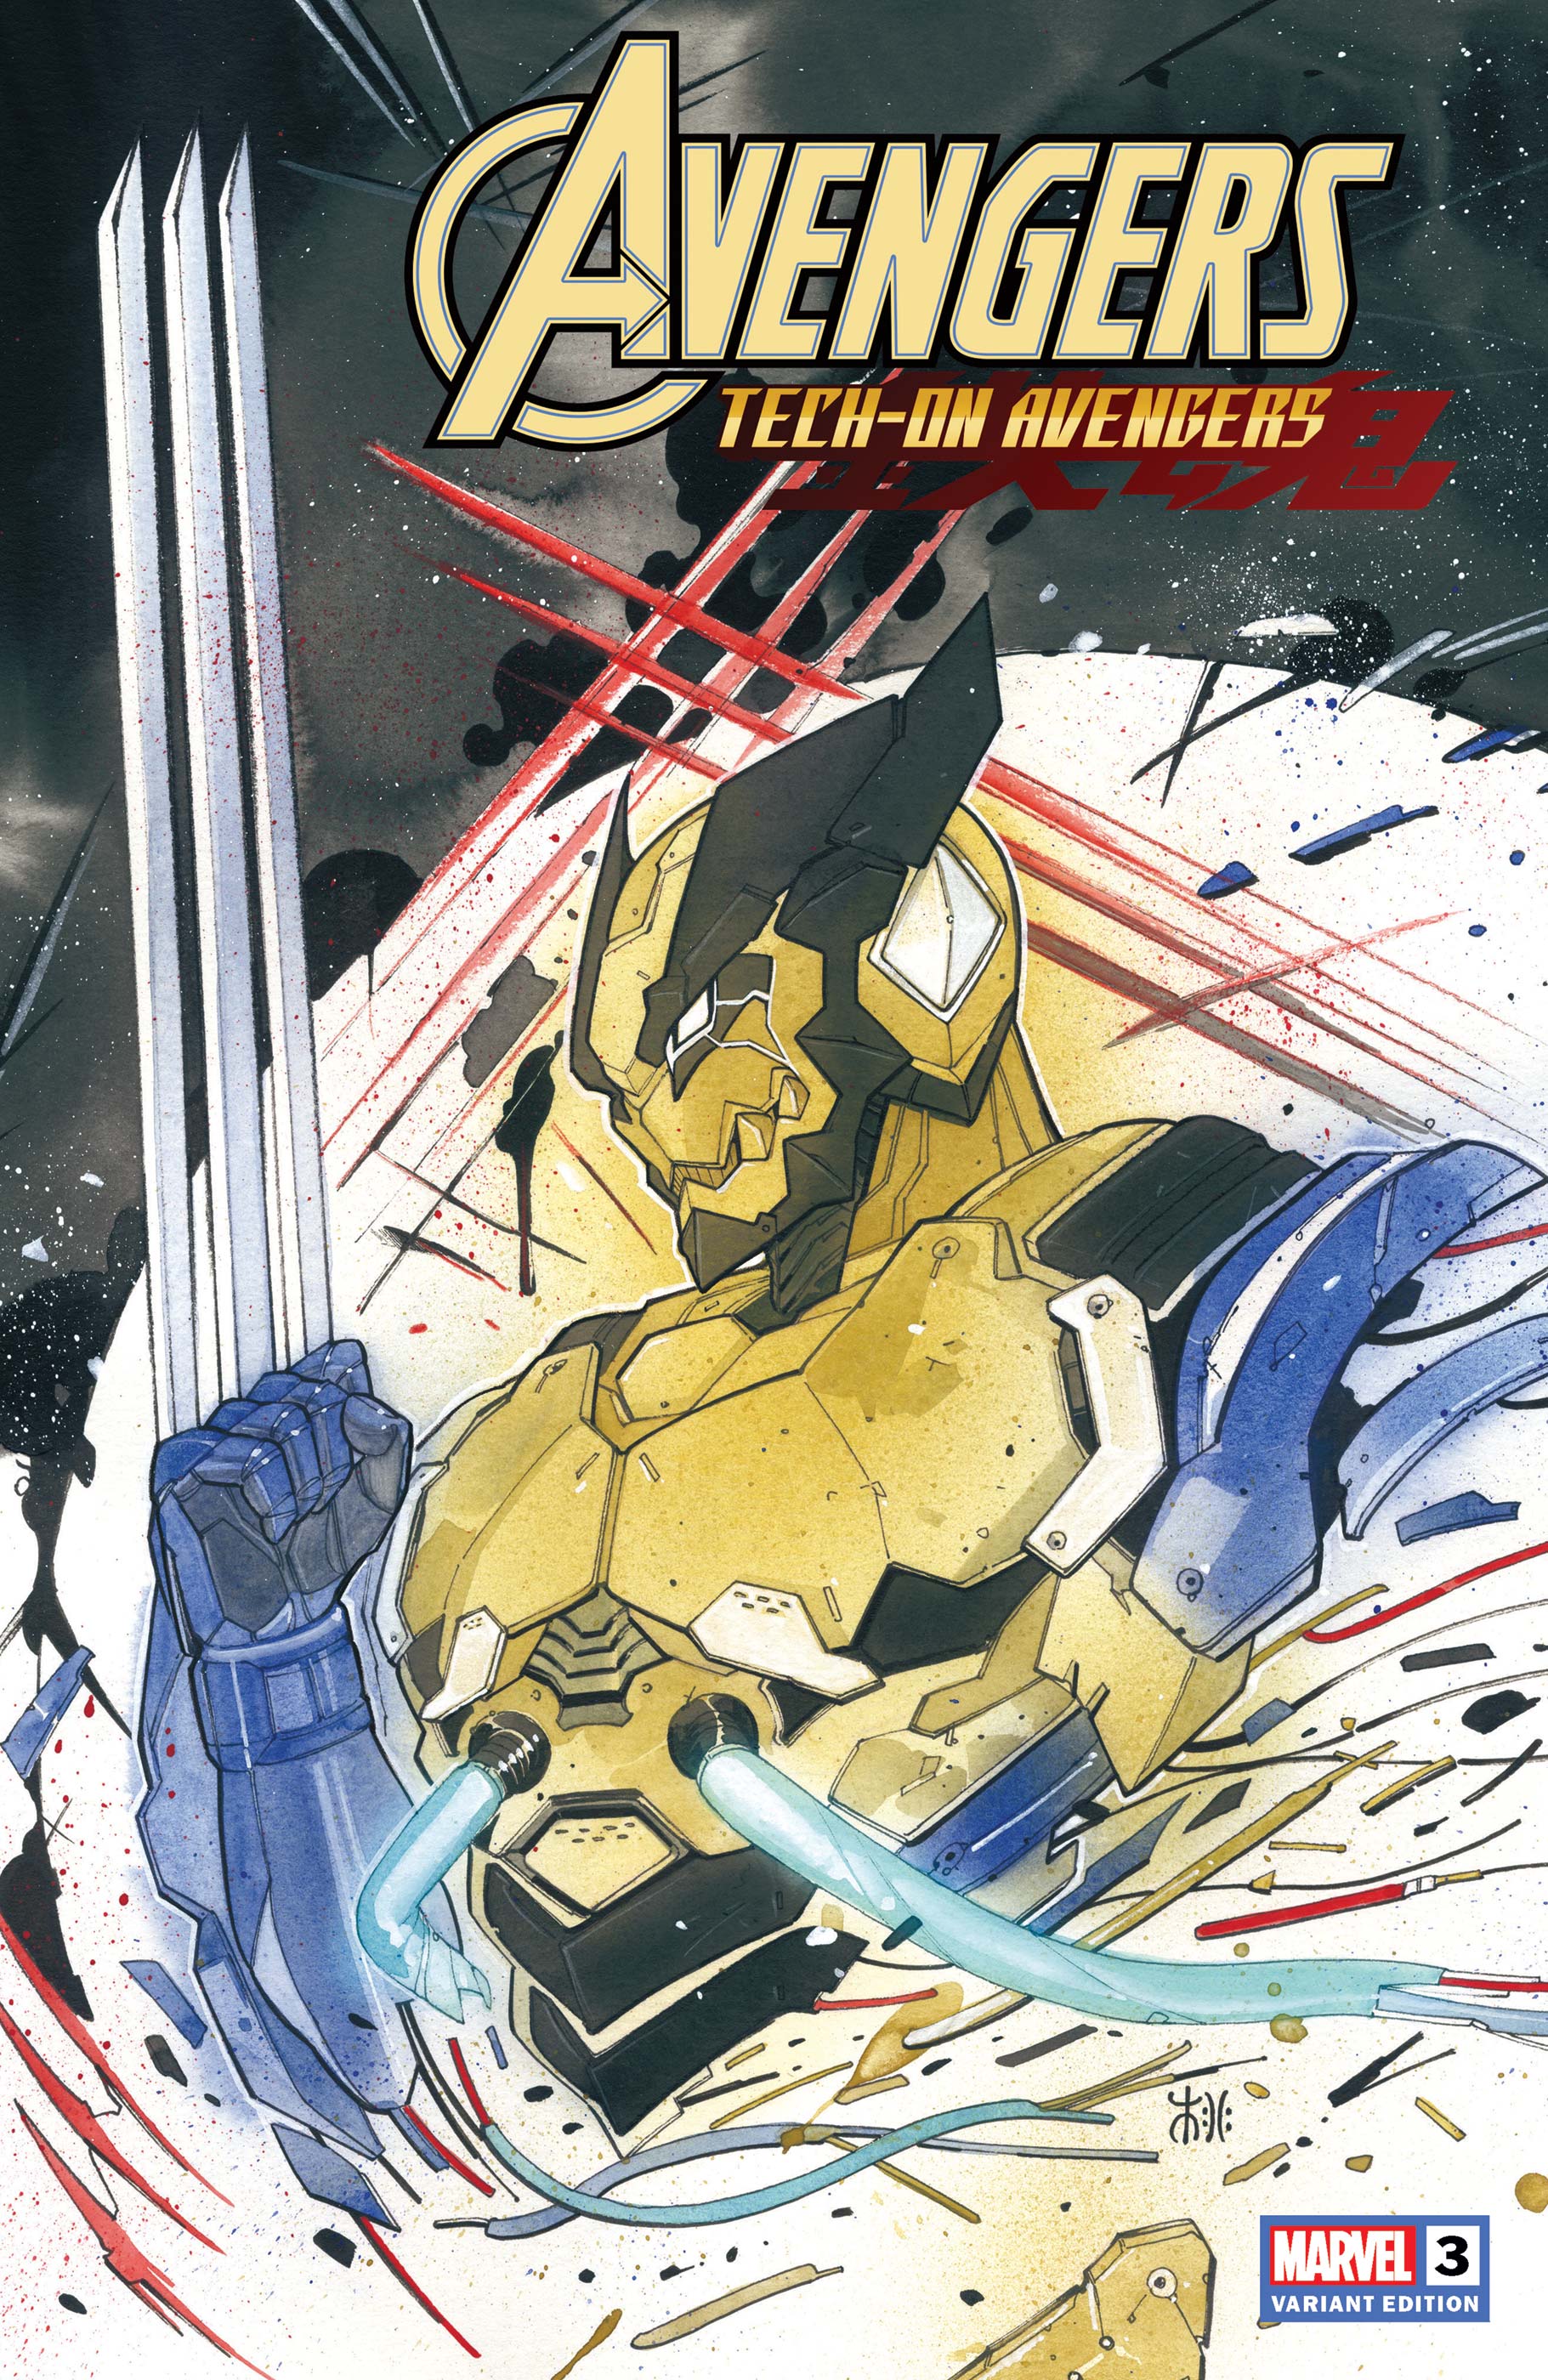 Avengers: Tech-on (2021) #3 (Variant)